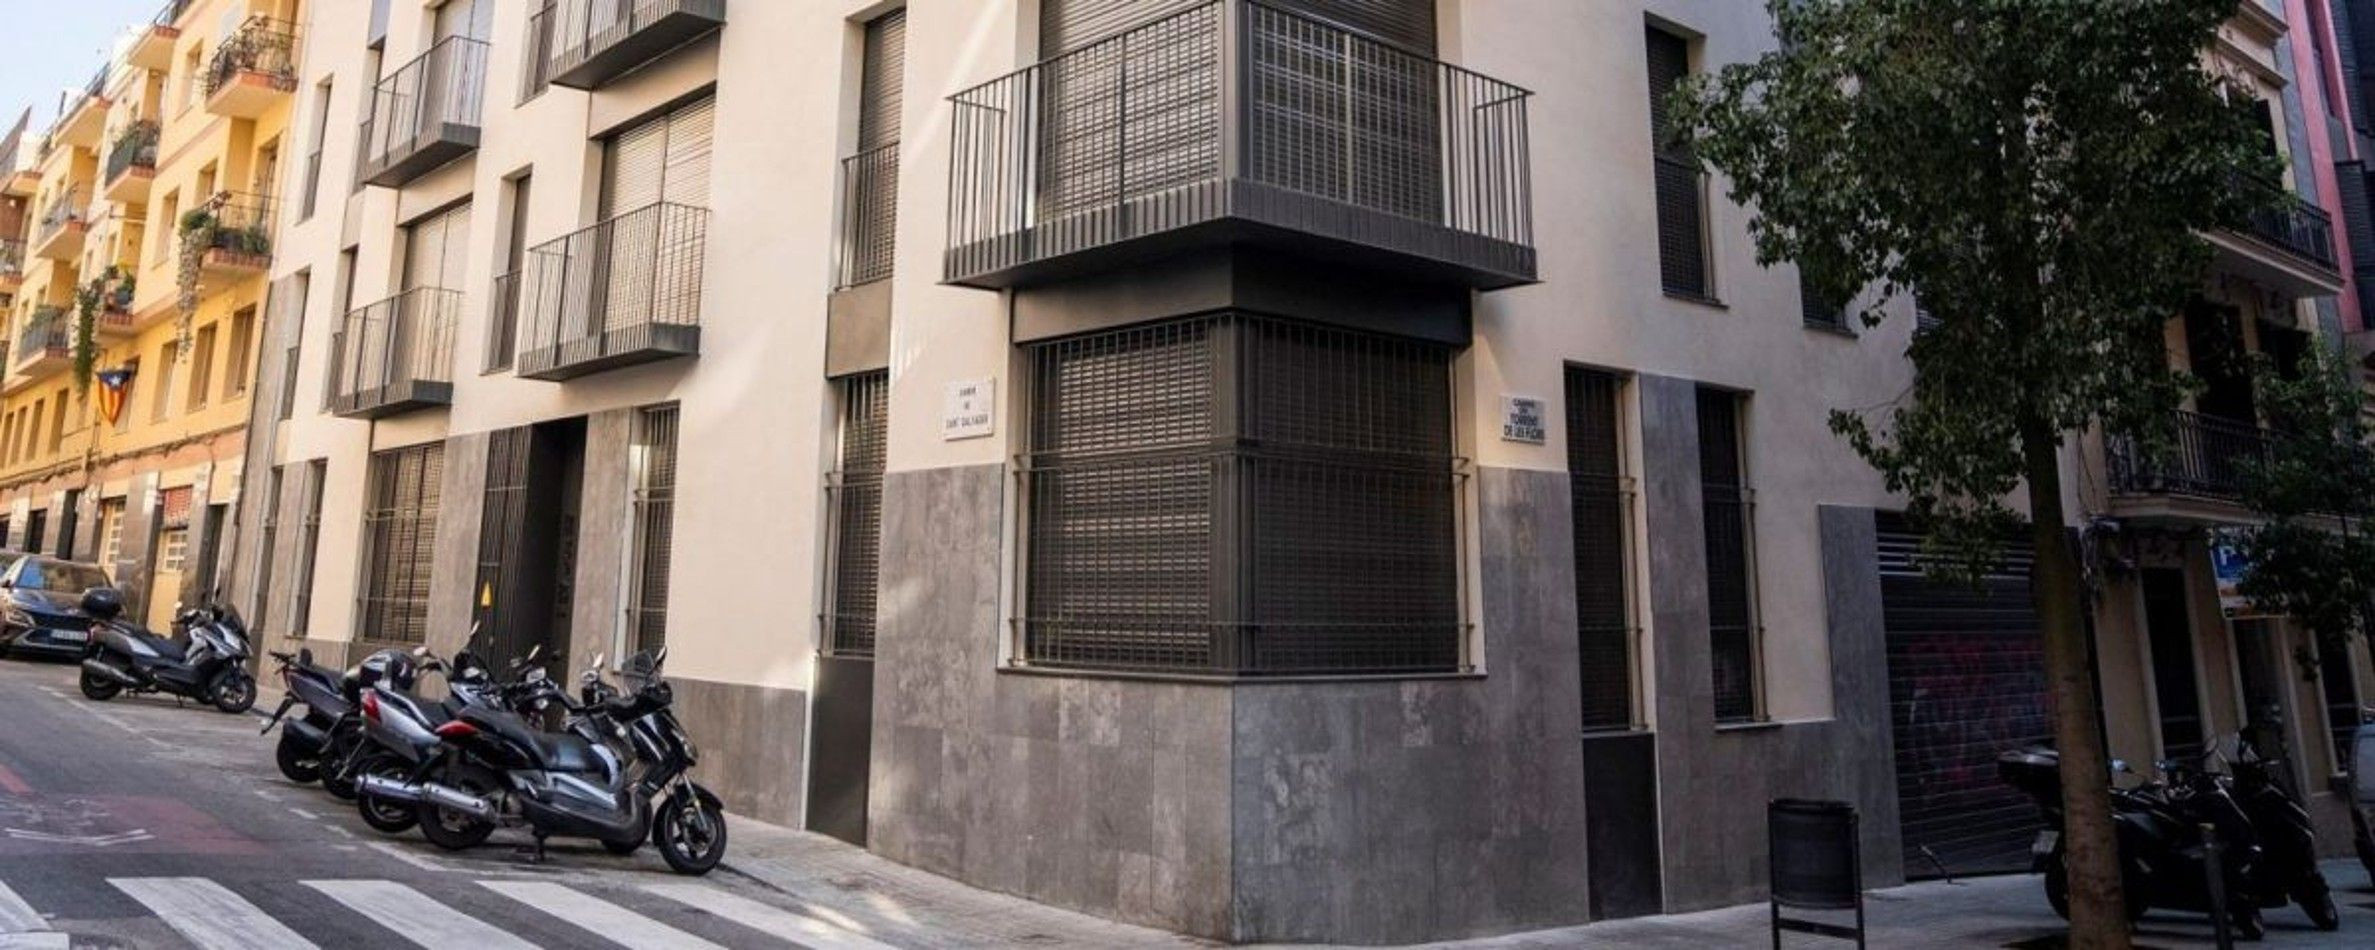 Un edificio adquirido por el Ayuntamiento de Barcelona para vivienda social en una imagen de archivo / AJ BCN